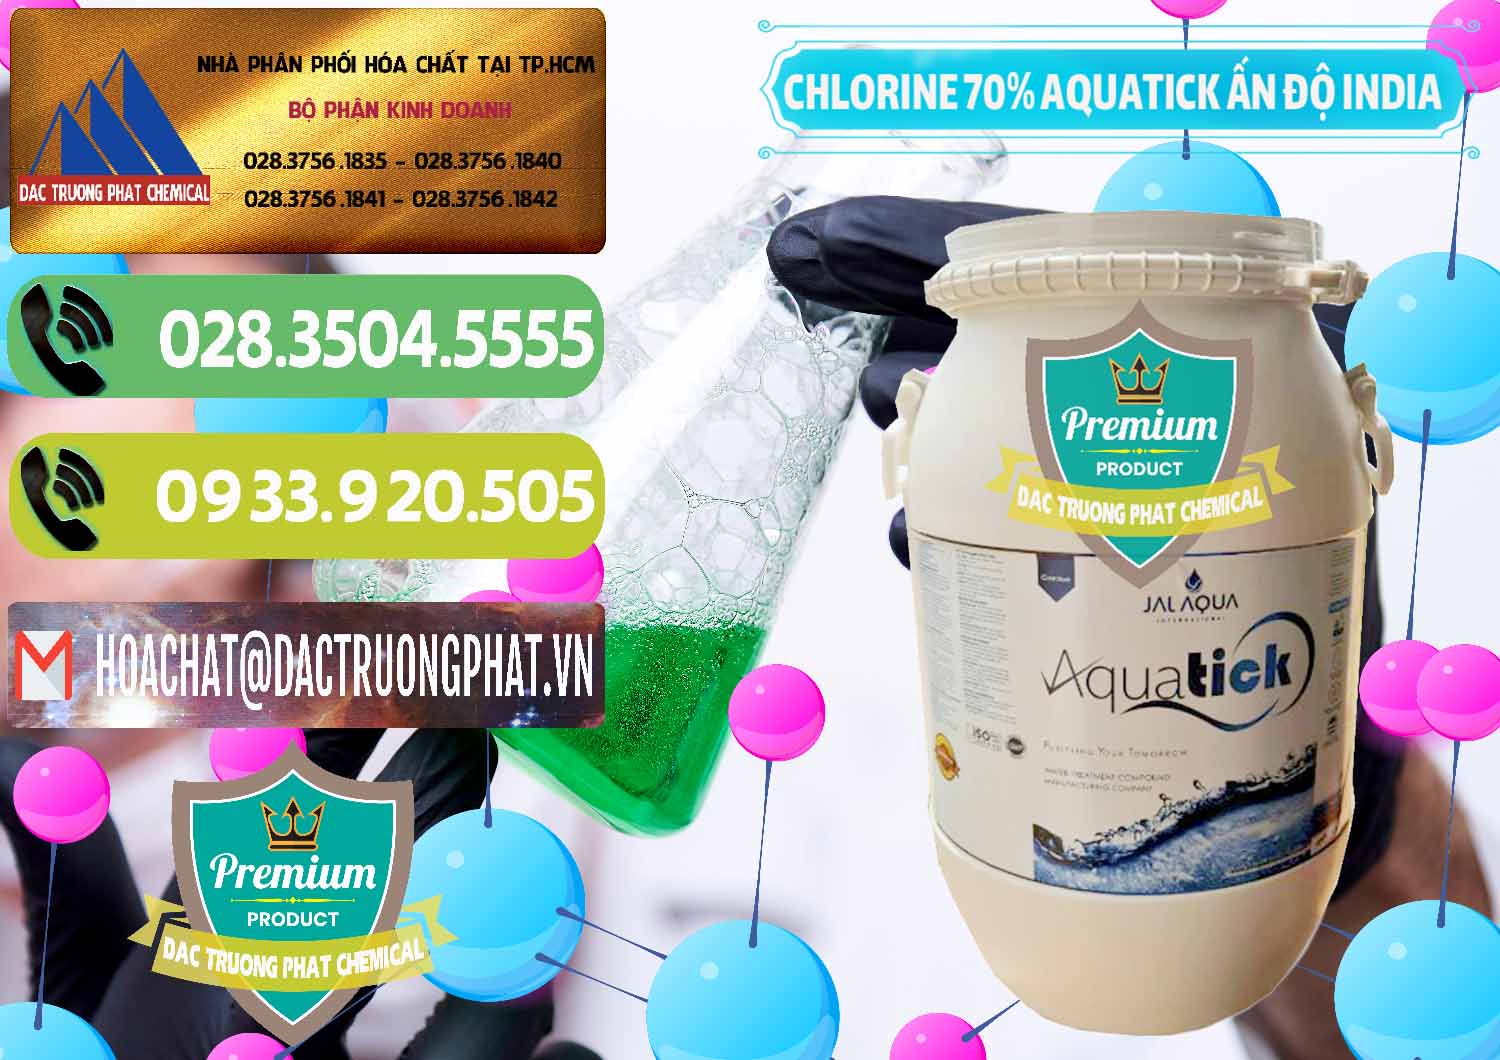 Cty chuyên nhập khẩu và bán Chlorine – Clorin 70% Aquatick Jal Aqua Ấn Độ India - 0215 - Công ty cung cấp và kinh doanh hóa chất tại TP.HCM - hoachatmientay.vn